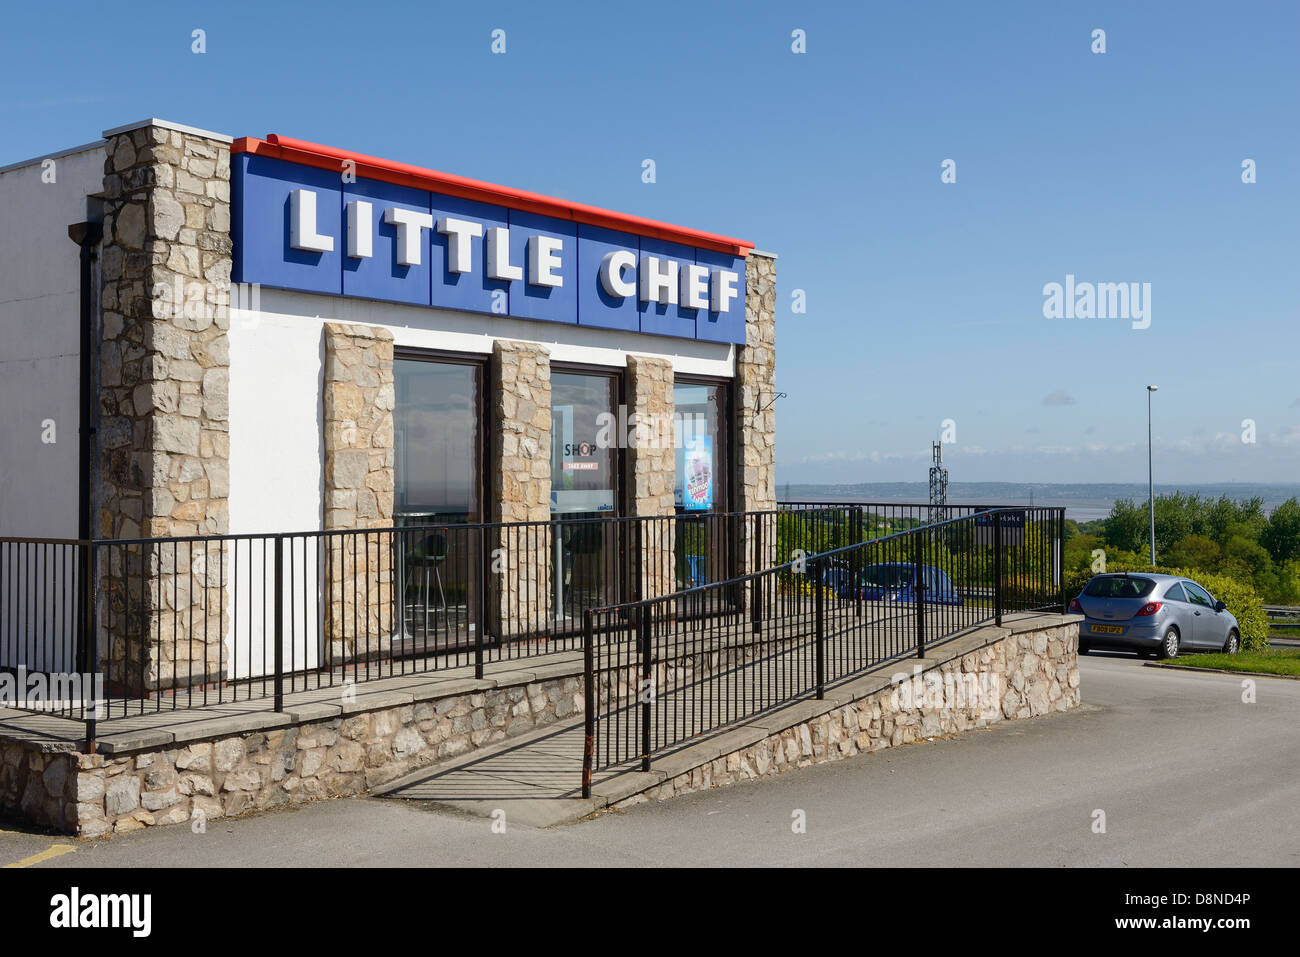 Little Chef restaurante de carretera junto a la A55 en el norte Halkyn East Wales UK Foto de stock